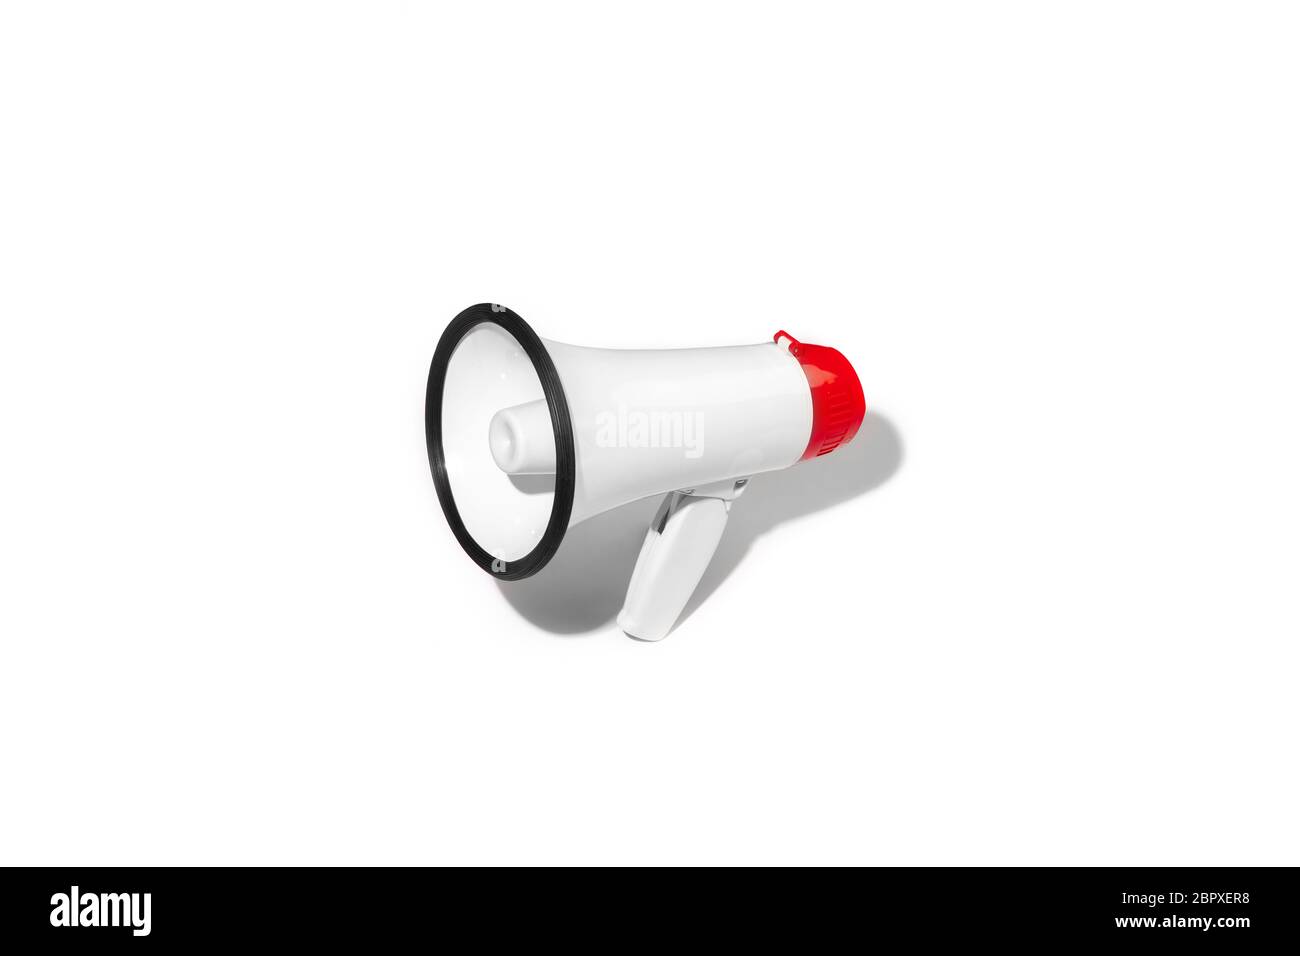 Rotes und weißes Megaphon isoliert auf weißem Studiohintergrund mit Copyspace für Werbung. Bullhorn oder Adressredner für öffentliche Treffen, Verkaufsvorschlag, Schreien, laute Sprachnachrichten. Stockfoto